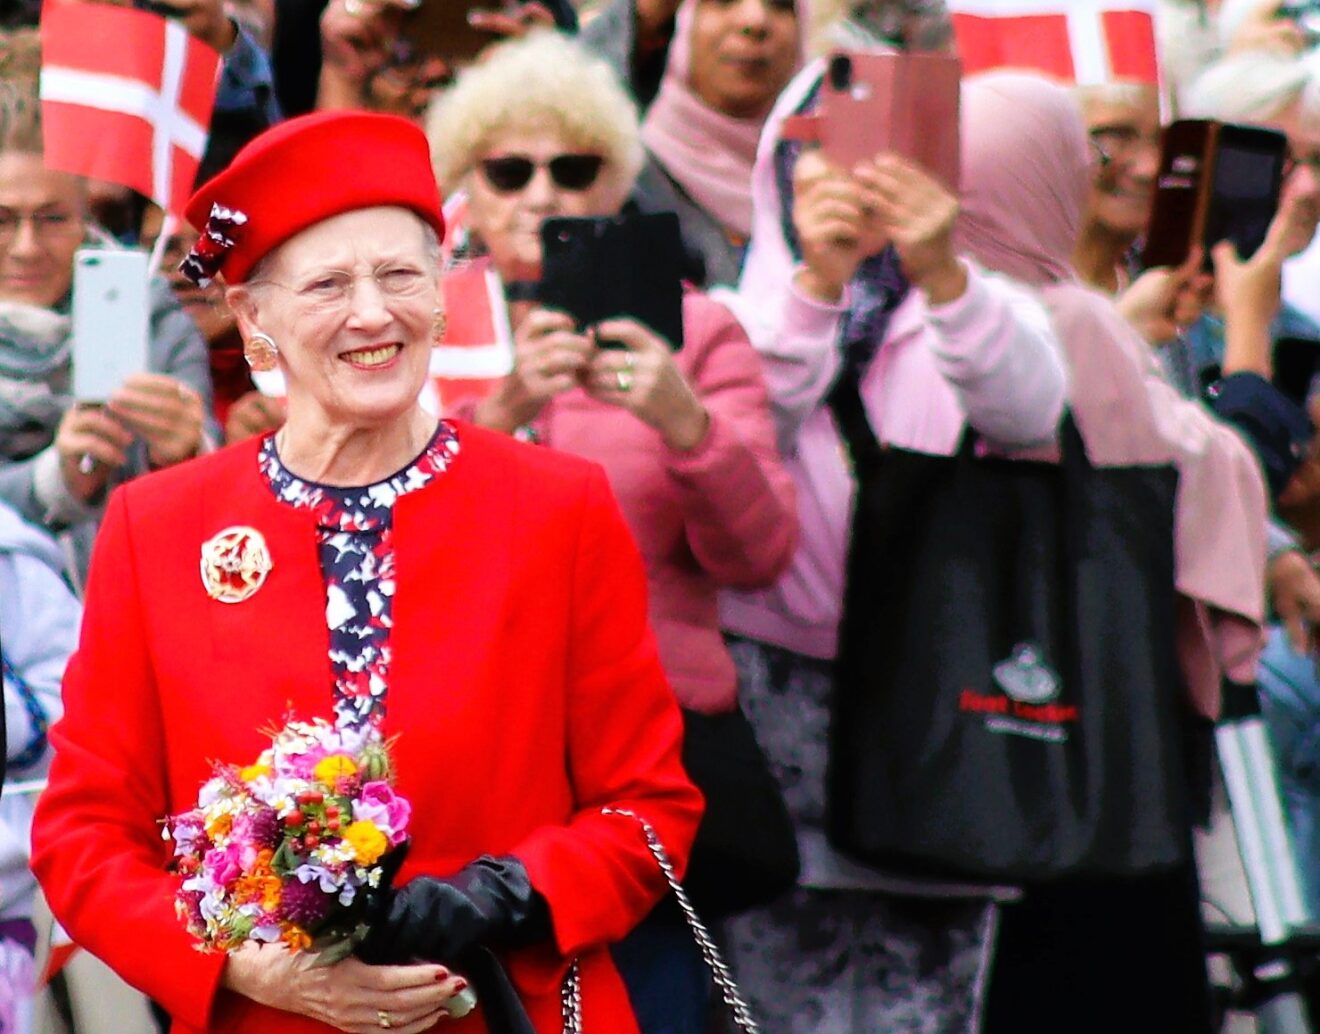 Odense kommunes giver mulighed for at skrive en hilsen til dronning margrethe